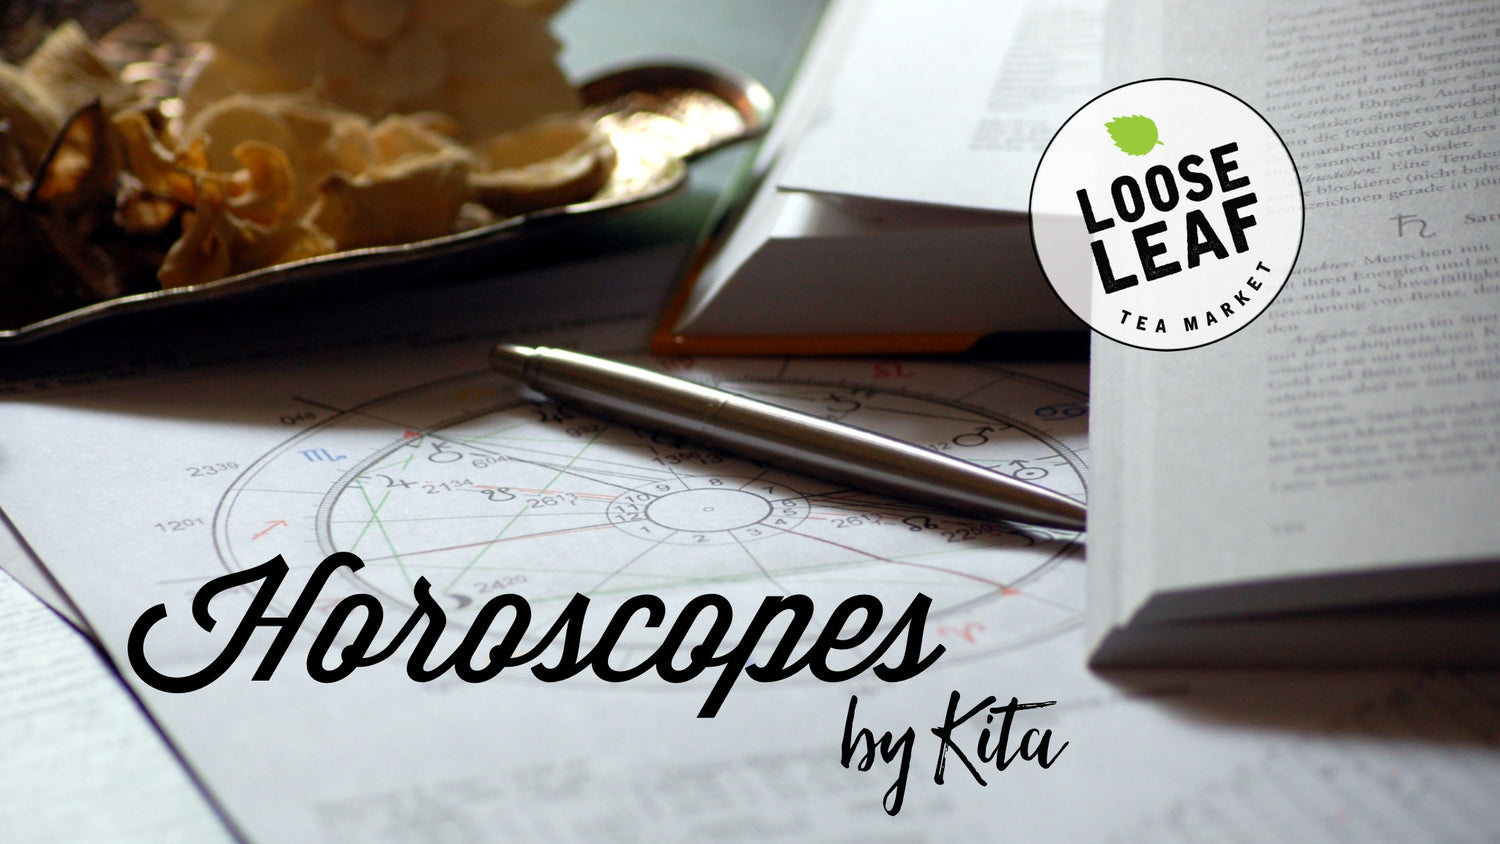 November Horoscopes By Kita - Loose Leaf Tea Market